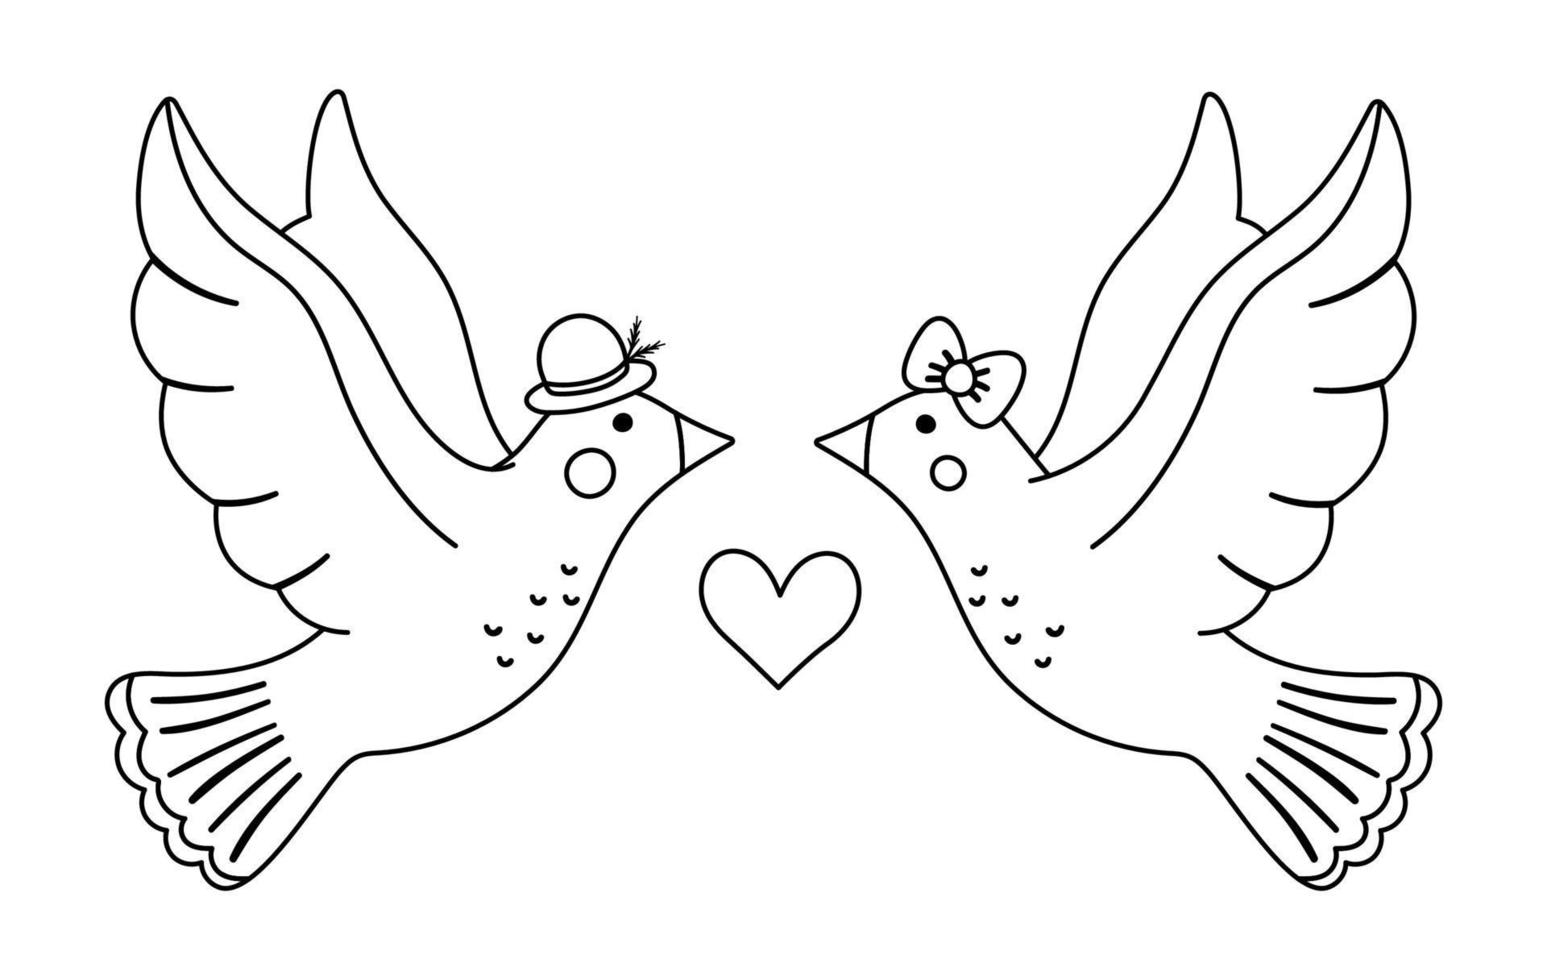 vector schattig zwart-wit duiven paar. liefdevolle paar illustratie. liefdesrelatie of familieconcept. romantische vogels geïsoleerd op een witte achtergrond. grappige valentijnsdag lijn tekens.